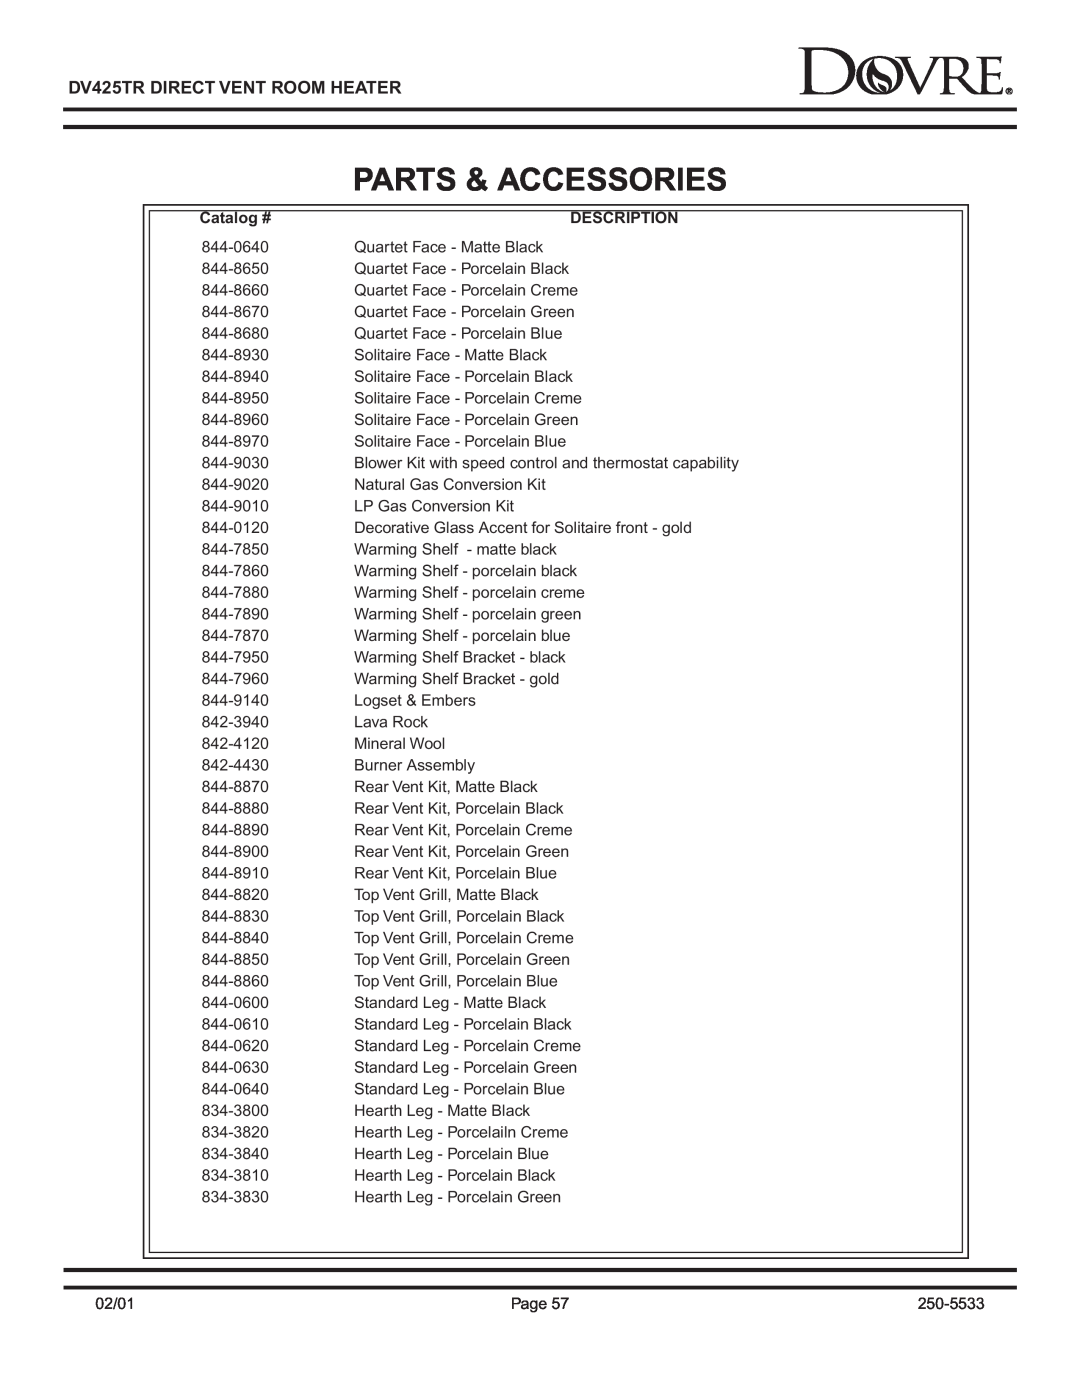 Sapphire Audio DV425TR owner manual Parts & Accessories, Catalog #, Description 